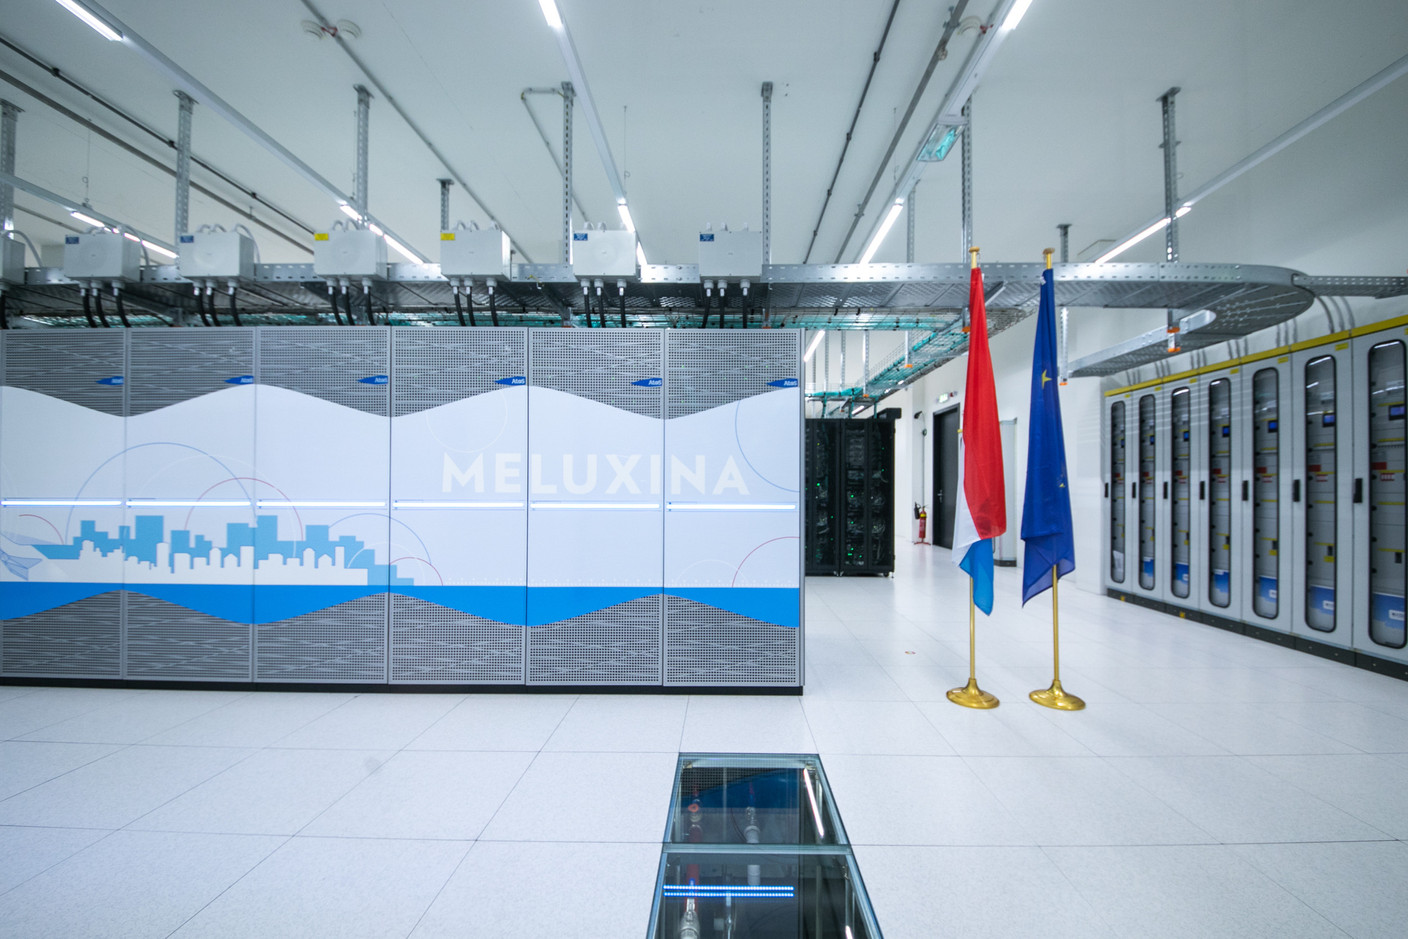 L’infrastructure Meluxina de 30,4 millions d’euros est née d’une volonté politique exprimée il y a cinq ans. (Photo: Matic Zorman / Maison Moderne)